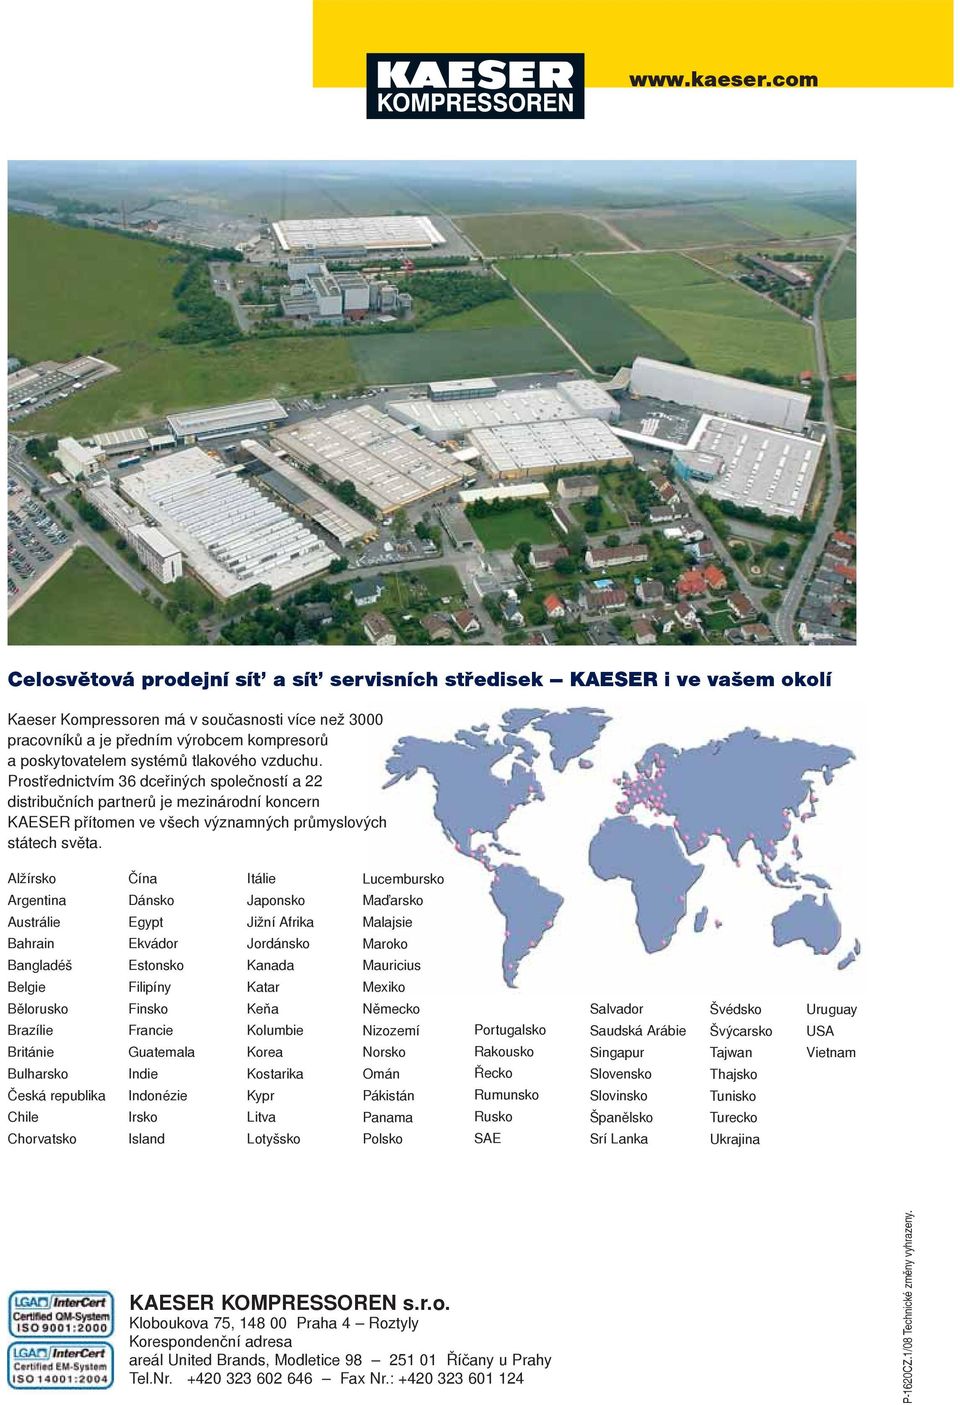 tlakového vzduchu. Prostřednictvím 36 dceřiných společností a 22 distribučních partnerů je mezinárodní koncern KAESER přítomen ve všech významných průmyslových státech světa.